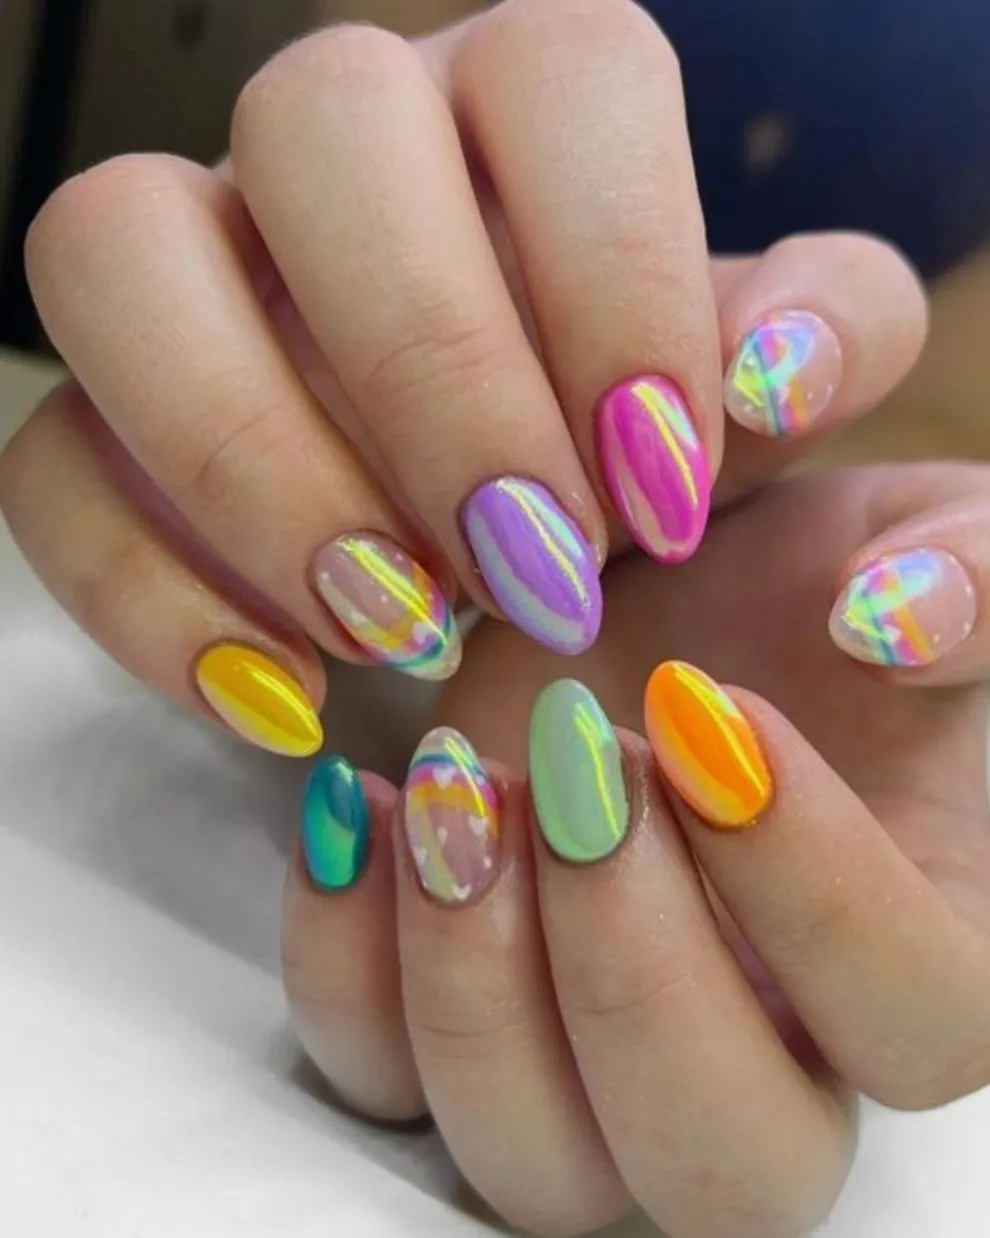 Con uñas de diferentes colores y esmaltes tornasolados, lo combinás con un diseño de arcoiris.